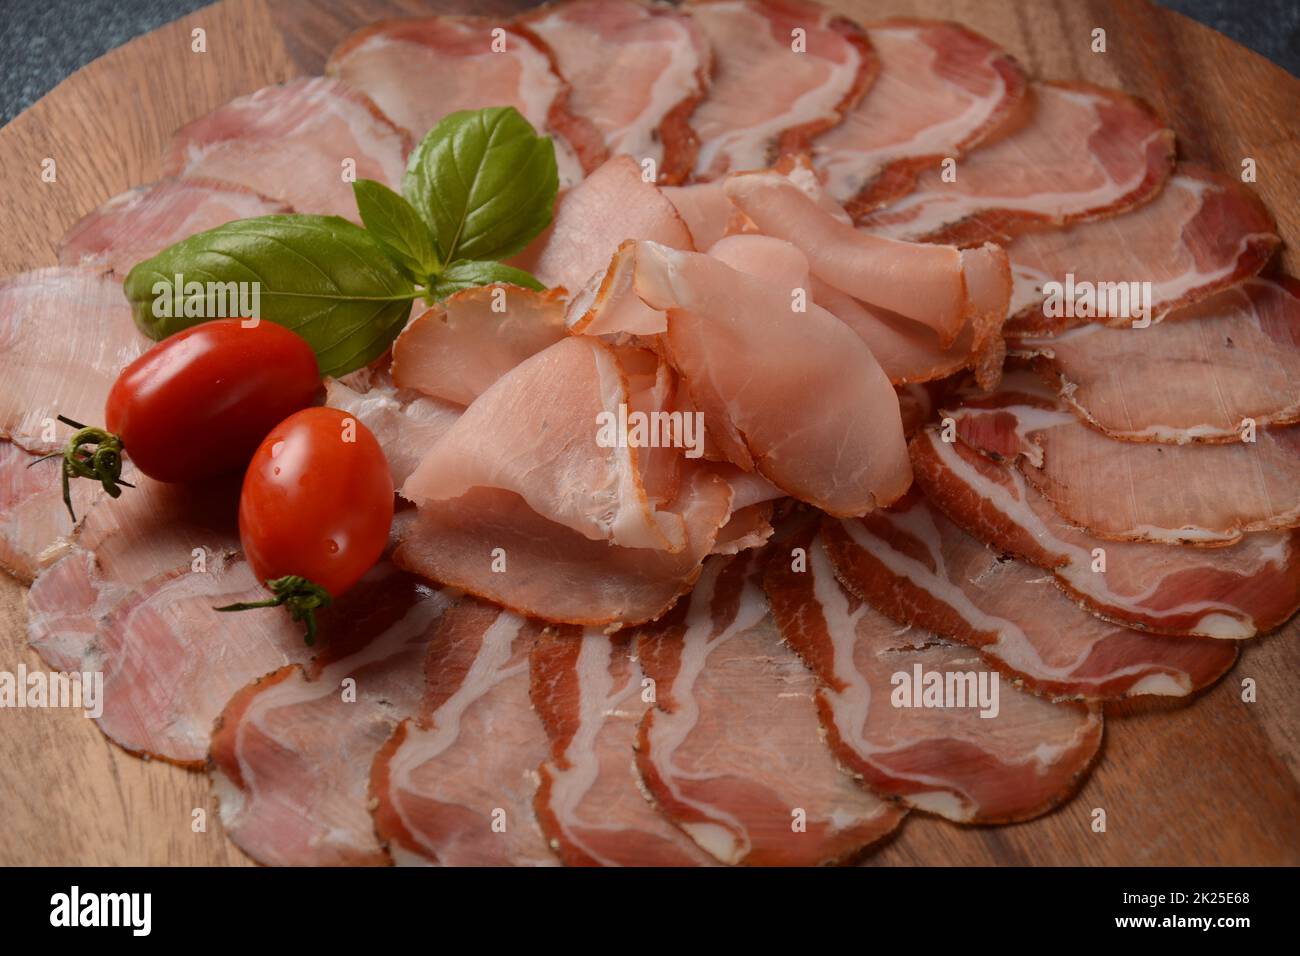 Italienische gehärtete Schweineschulter. Antipasto-Platte coppa stagionata und Kirschtomaten. Traditionelle Wurst in Scheiben mit Gewürzen Stockfoto